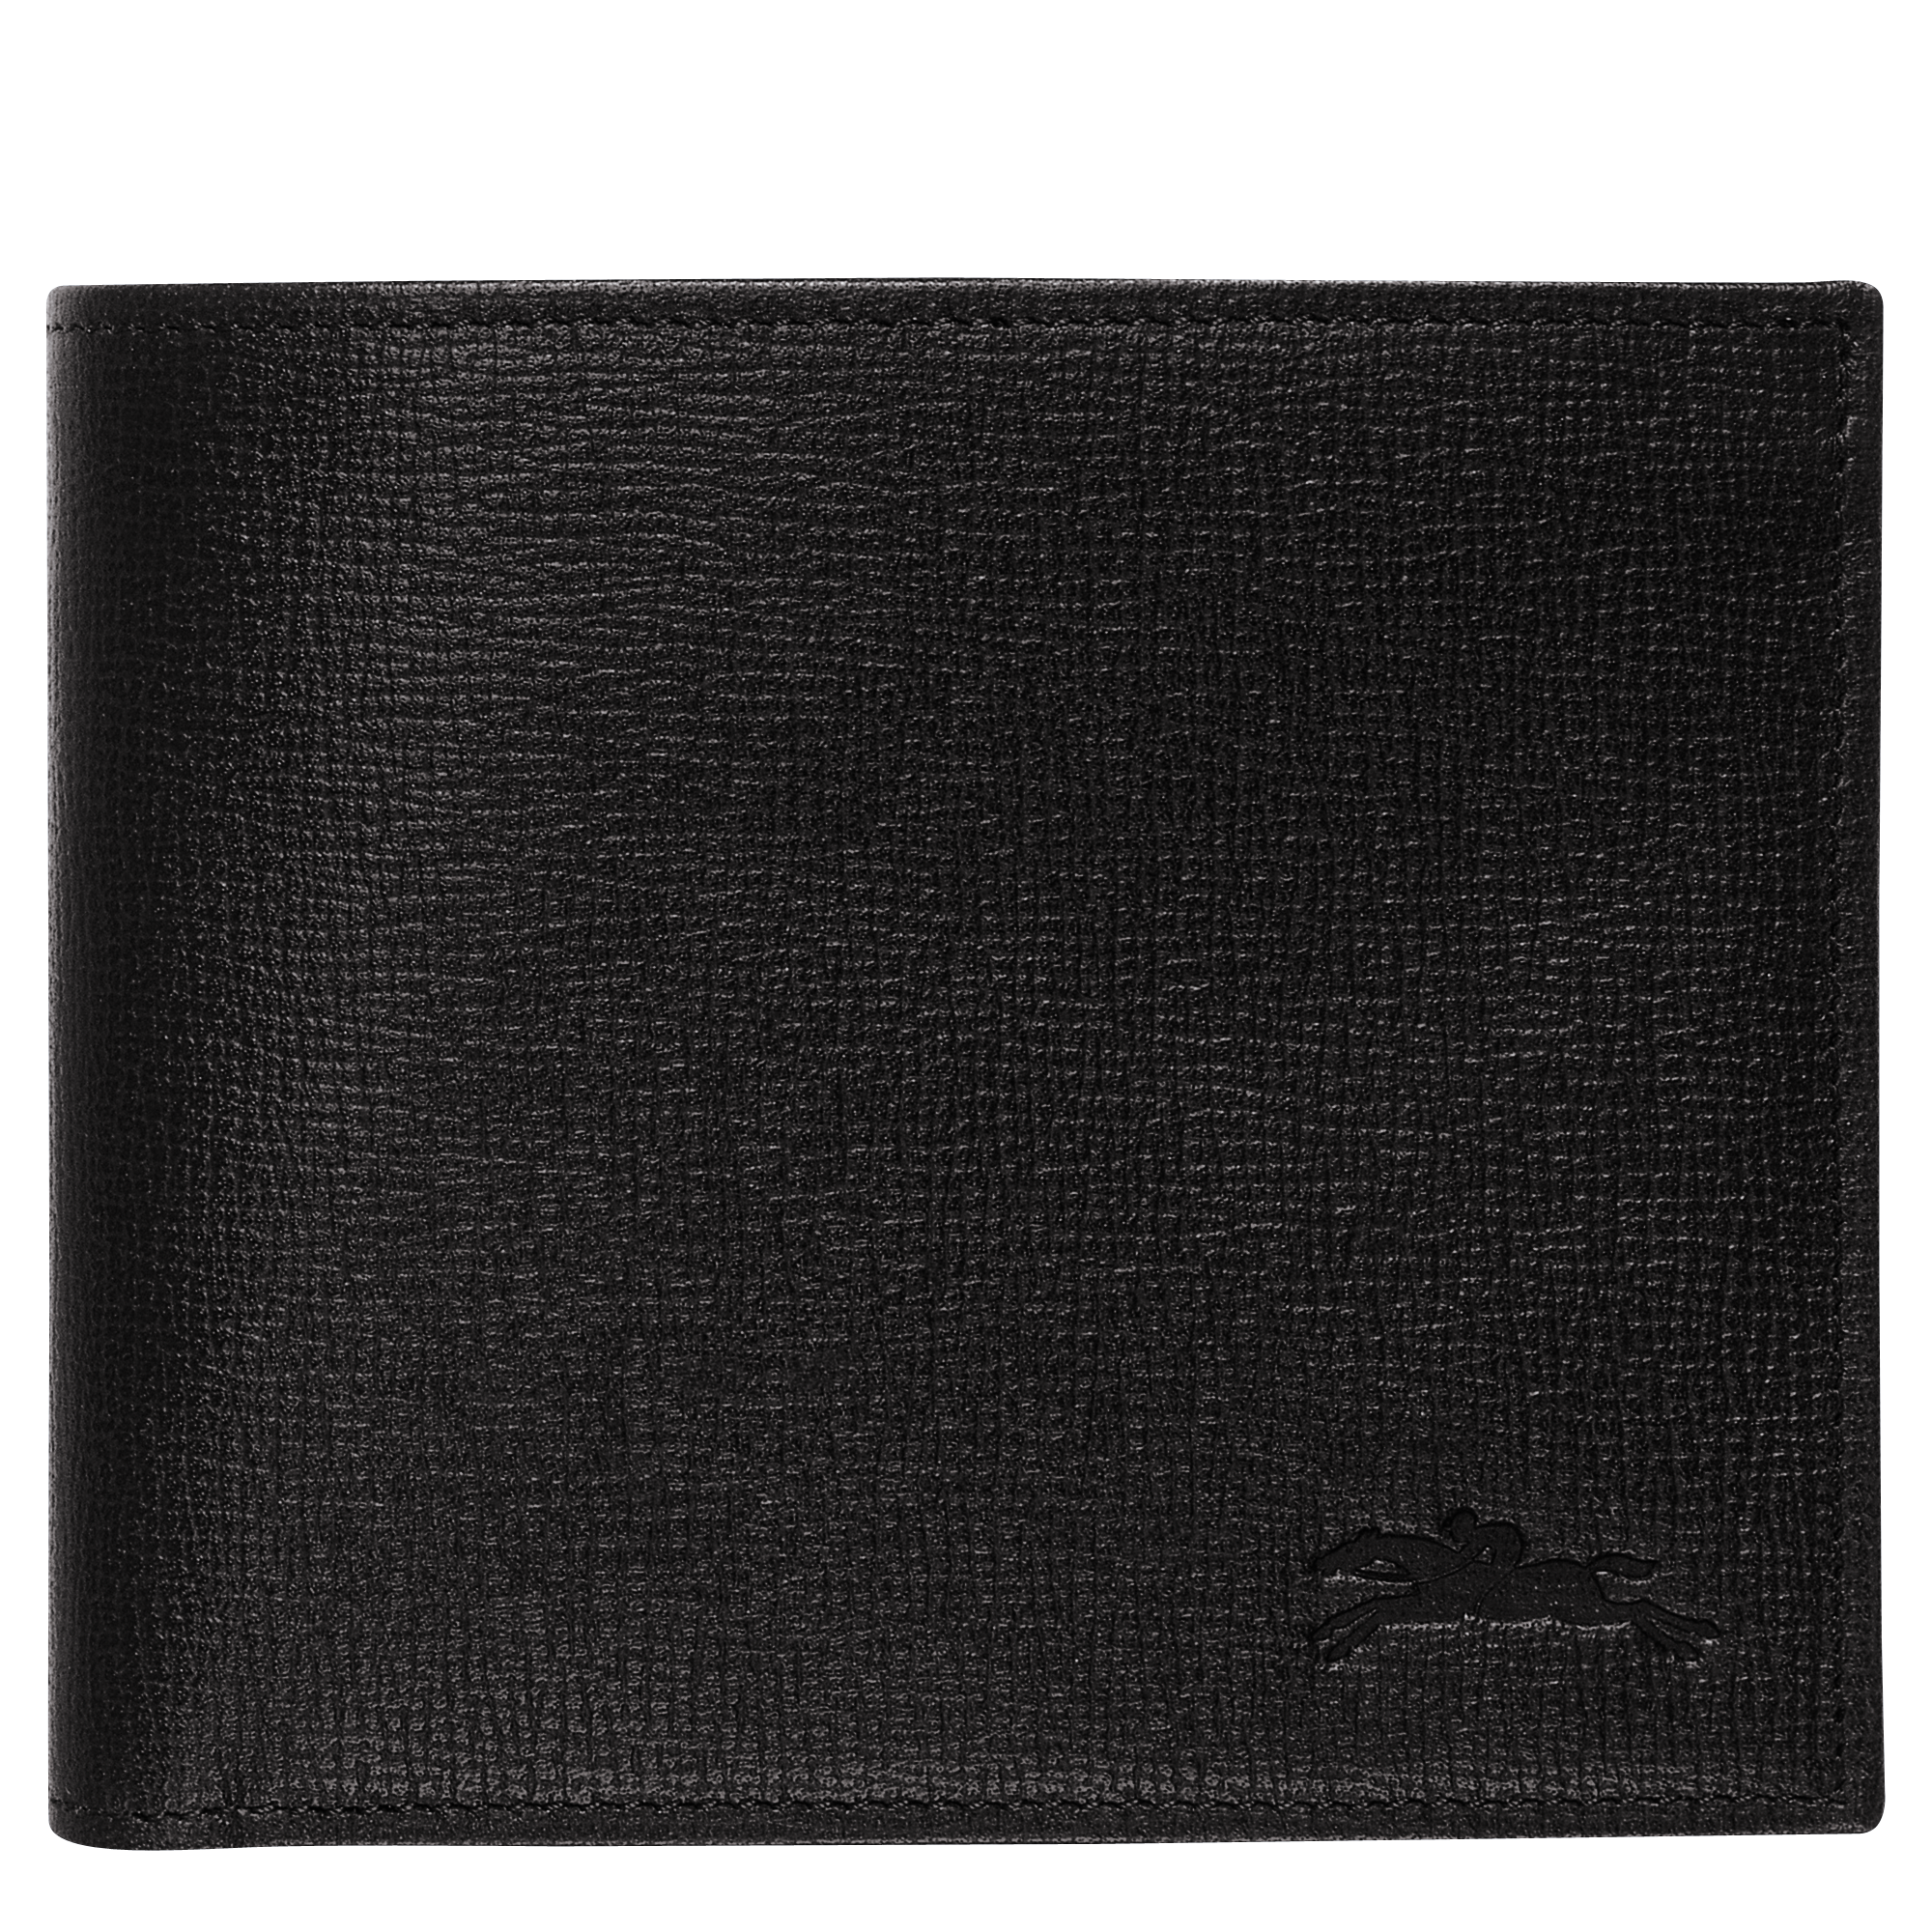 longchamp men's leather wallet